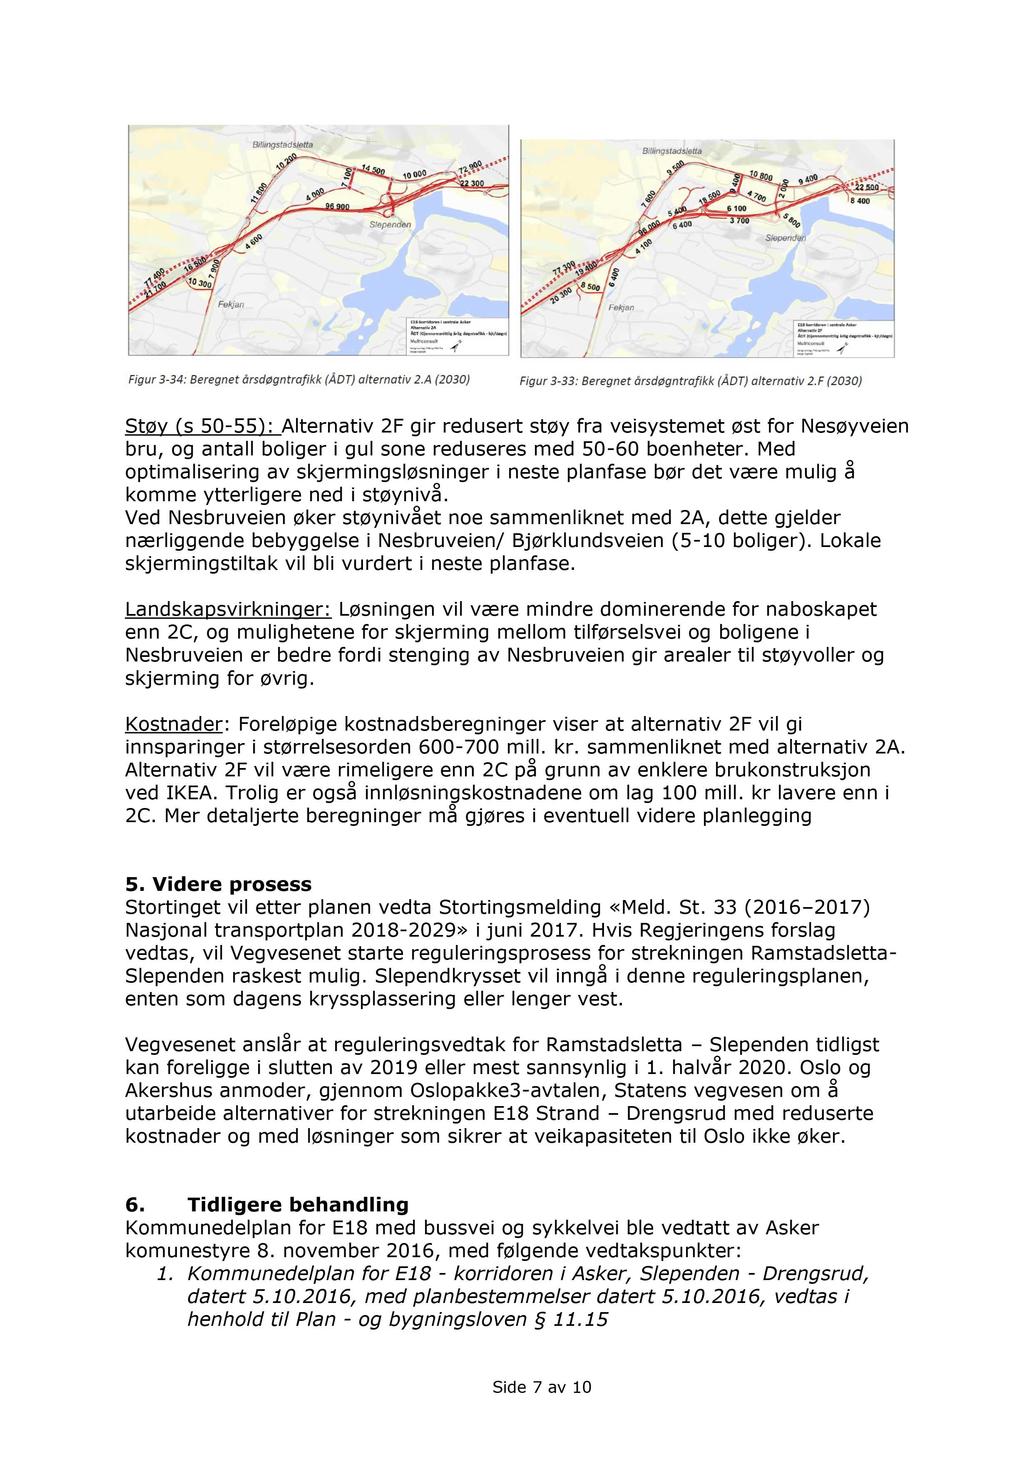 Støy (s 50-55): Alternativ 2F gir redusert støy fra veisystemet øst for Nesøyveien bru, og antall boliger i gul sone reduseres med 50-60 boenheter.